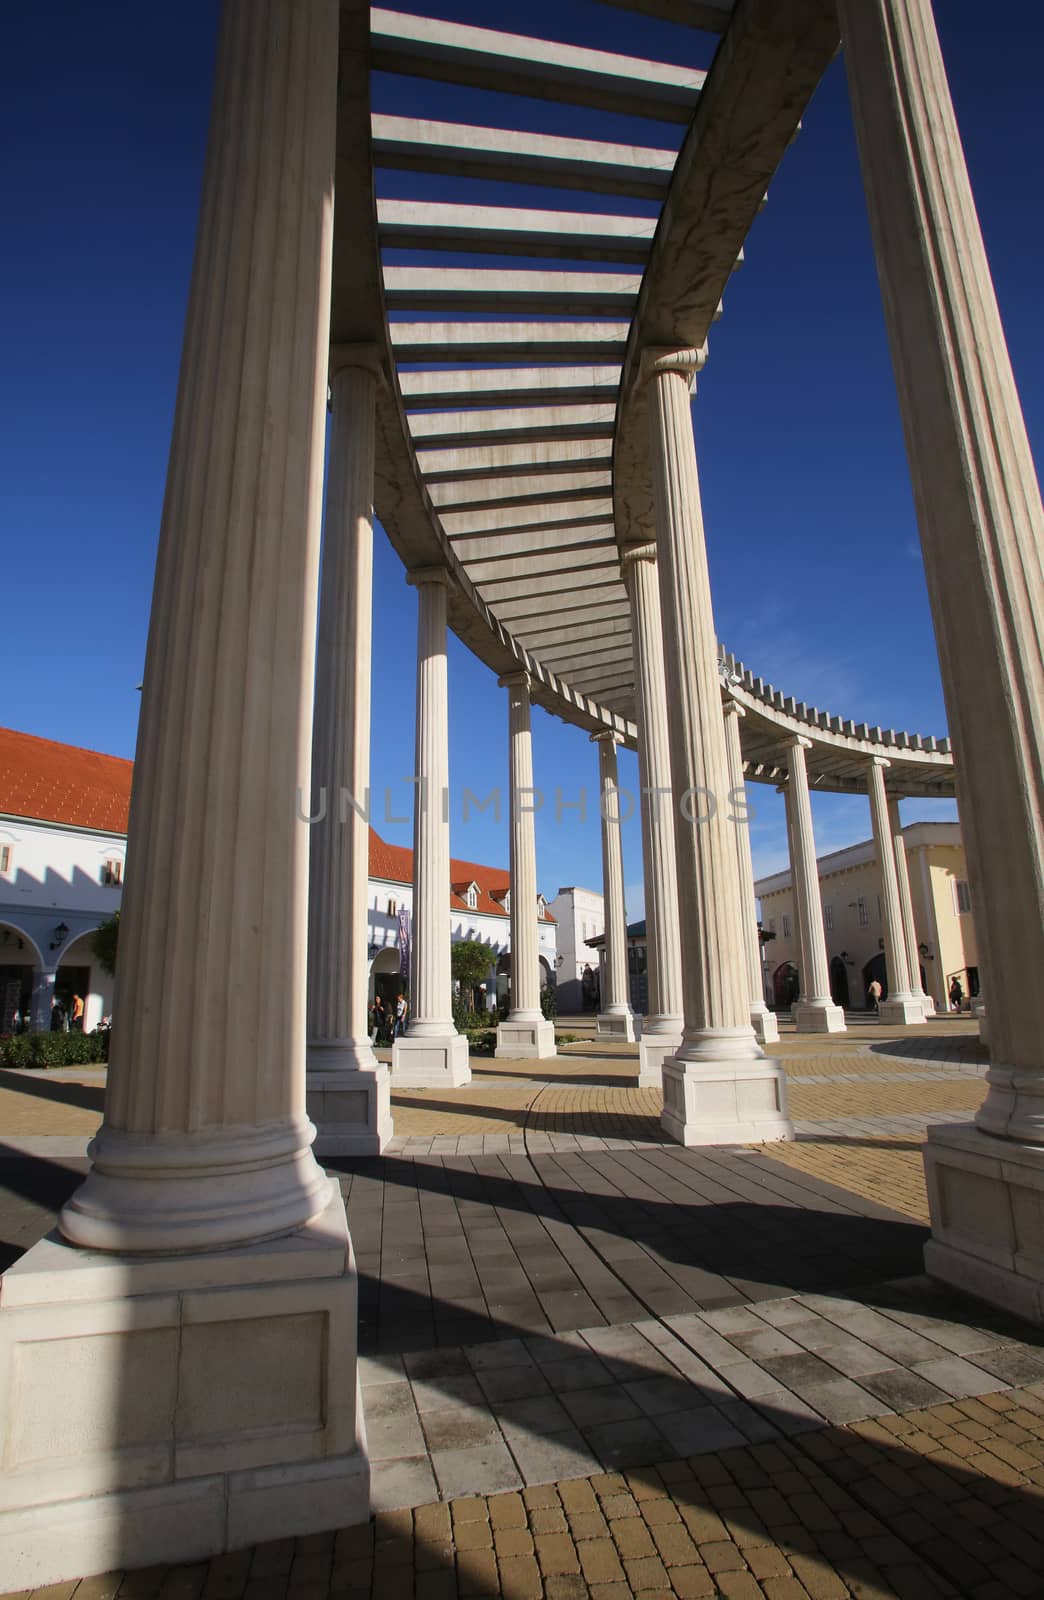 Modern colonnade of the shopping center in Sv. Kriz Zacretje, Croatia on September 21, 2014